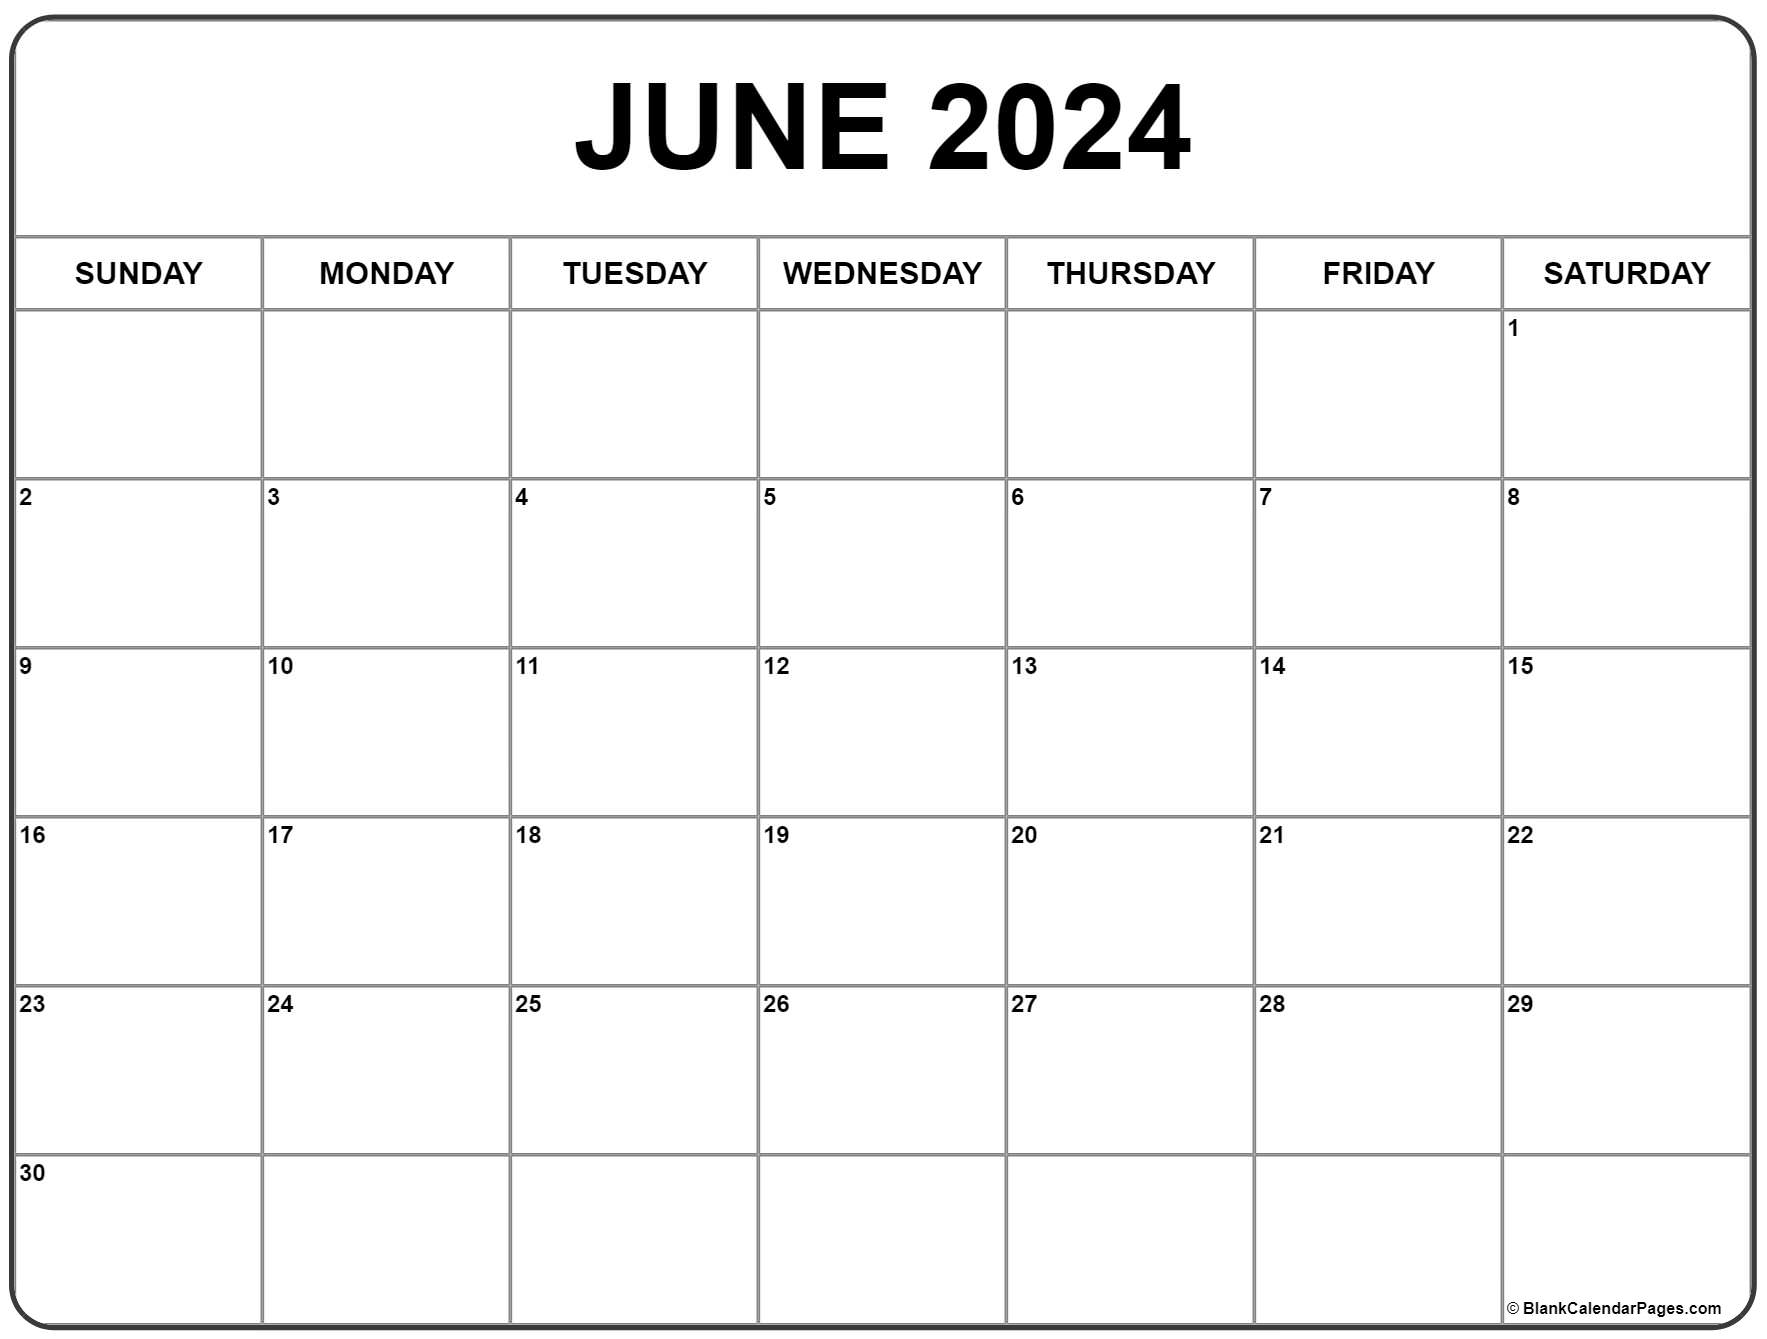 June 2024 Calendar | Free Printable Calendar for June Calendar Free Printable 2024